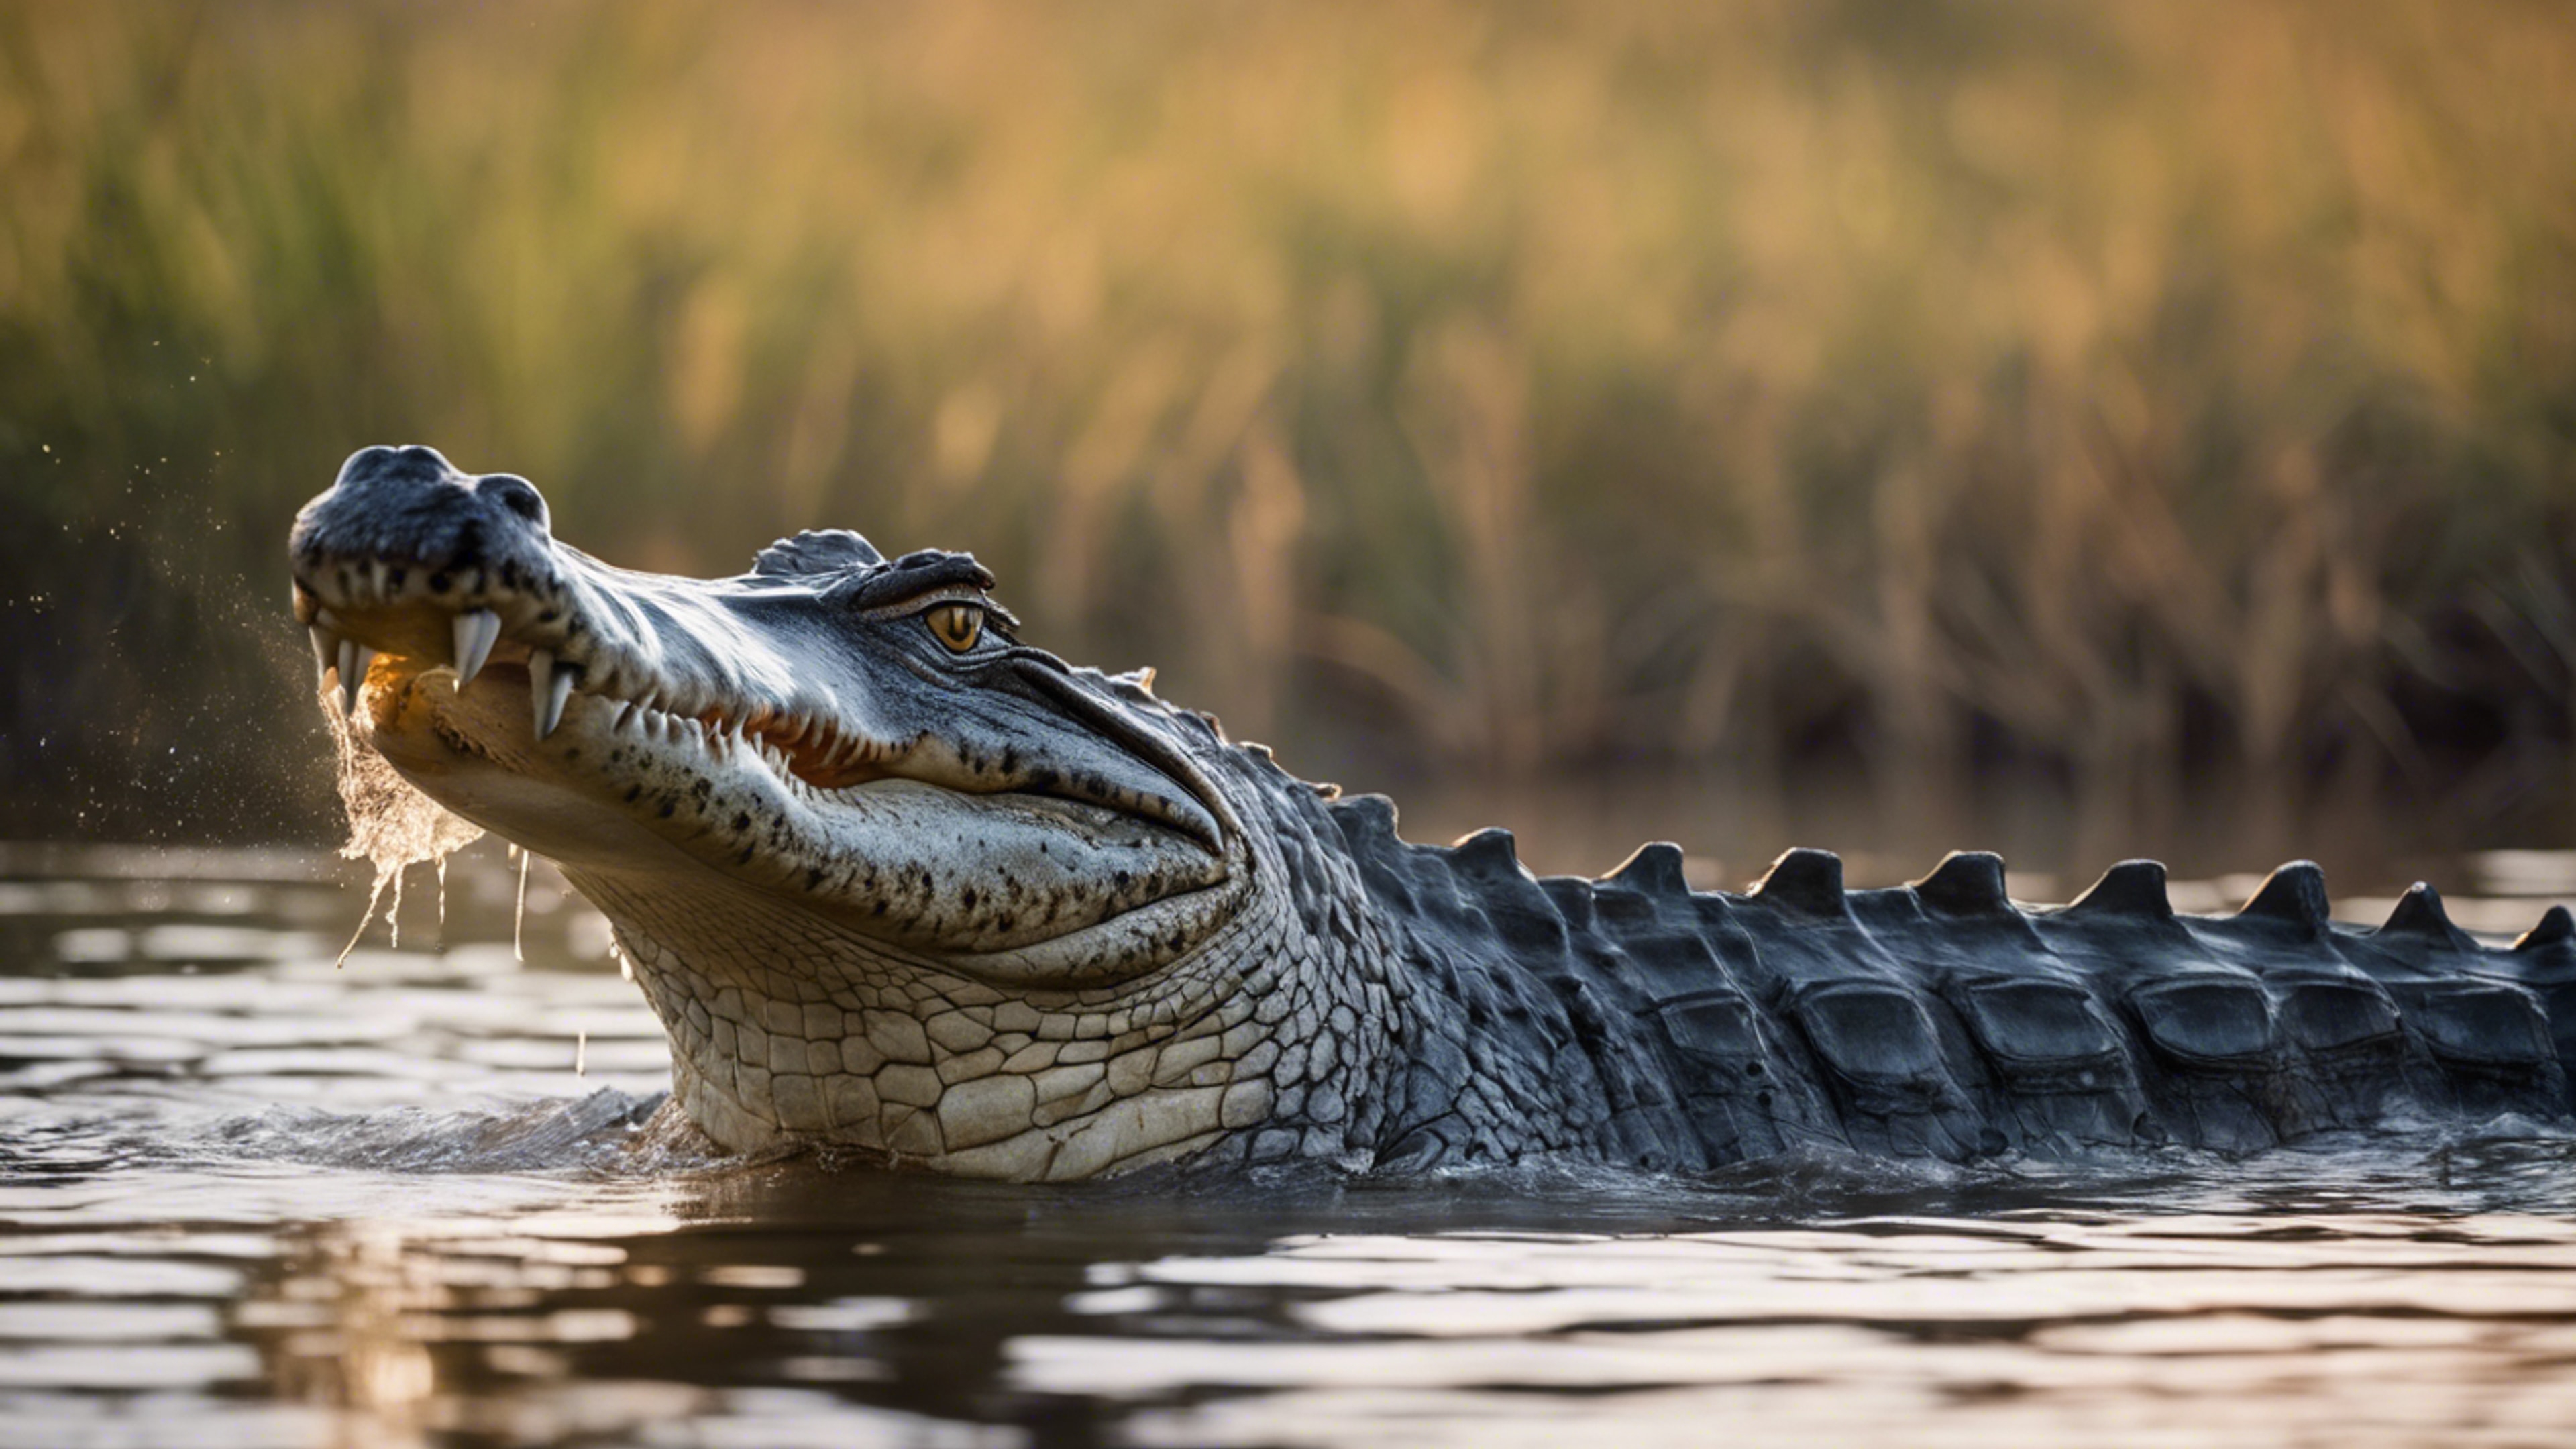 A glorious scene of a crocodile in the heart of the Okavango Delta. Sfondo[926204686e5b483ca4a6]